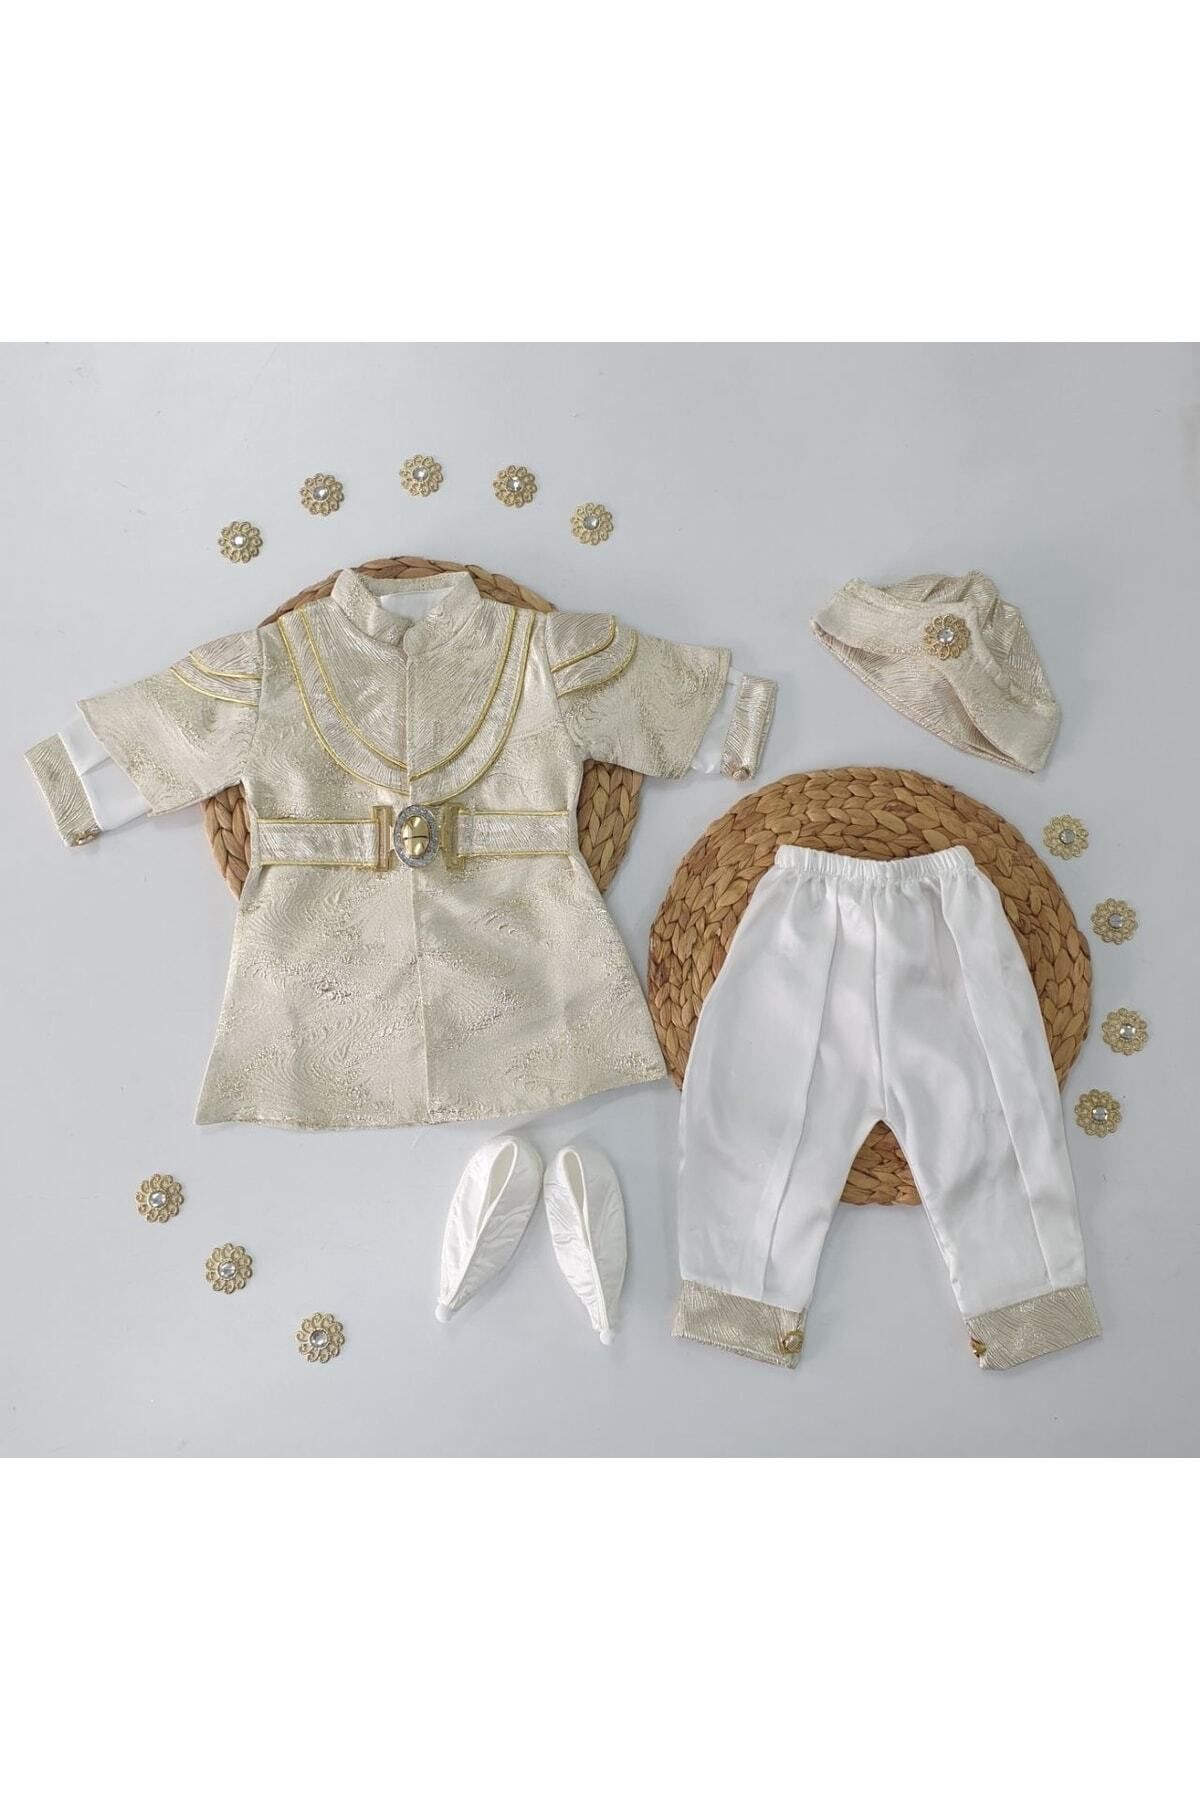 Cherub Baby Şehzade Erkek Bebek Mevlüt Ve Sünnet Kıyafeti Mevlütlük Sünnetlik Takım